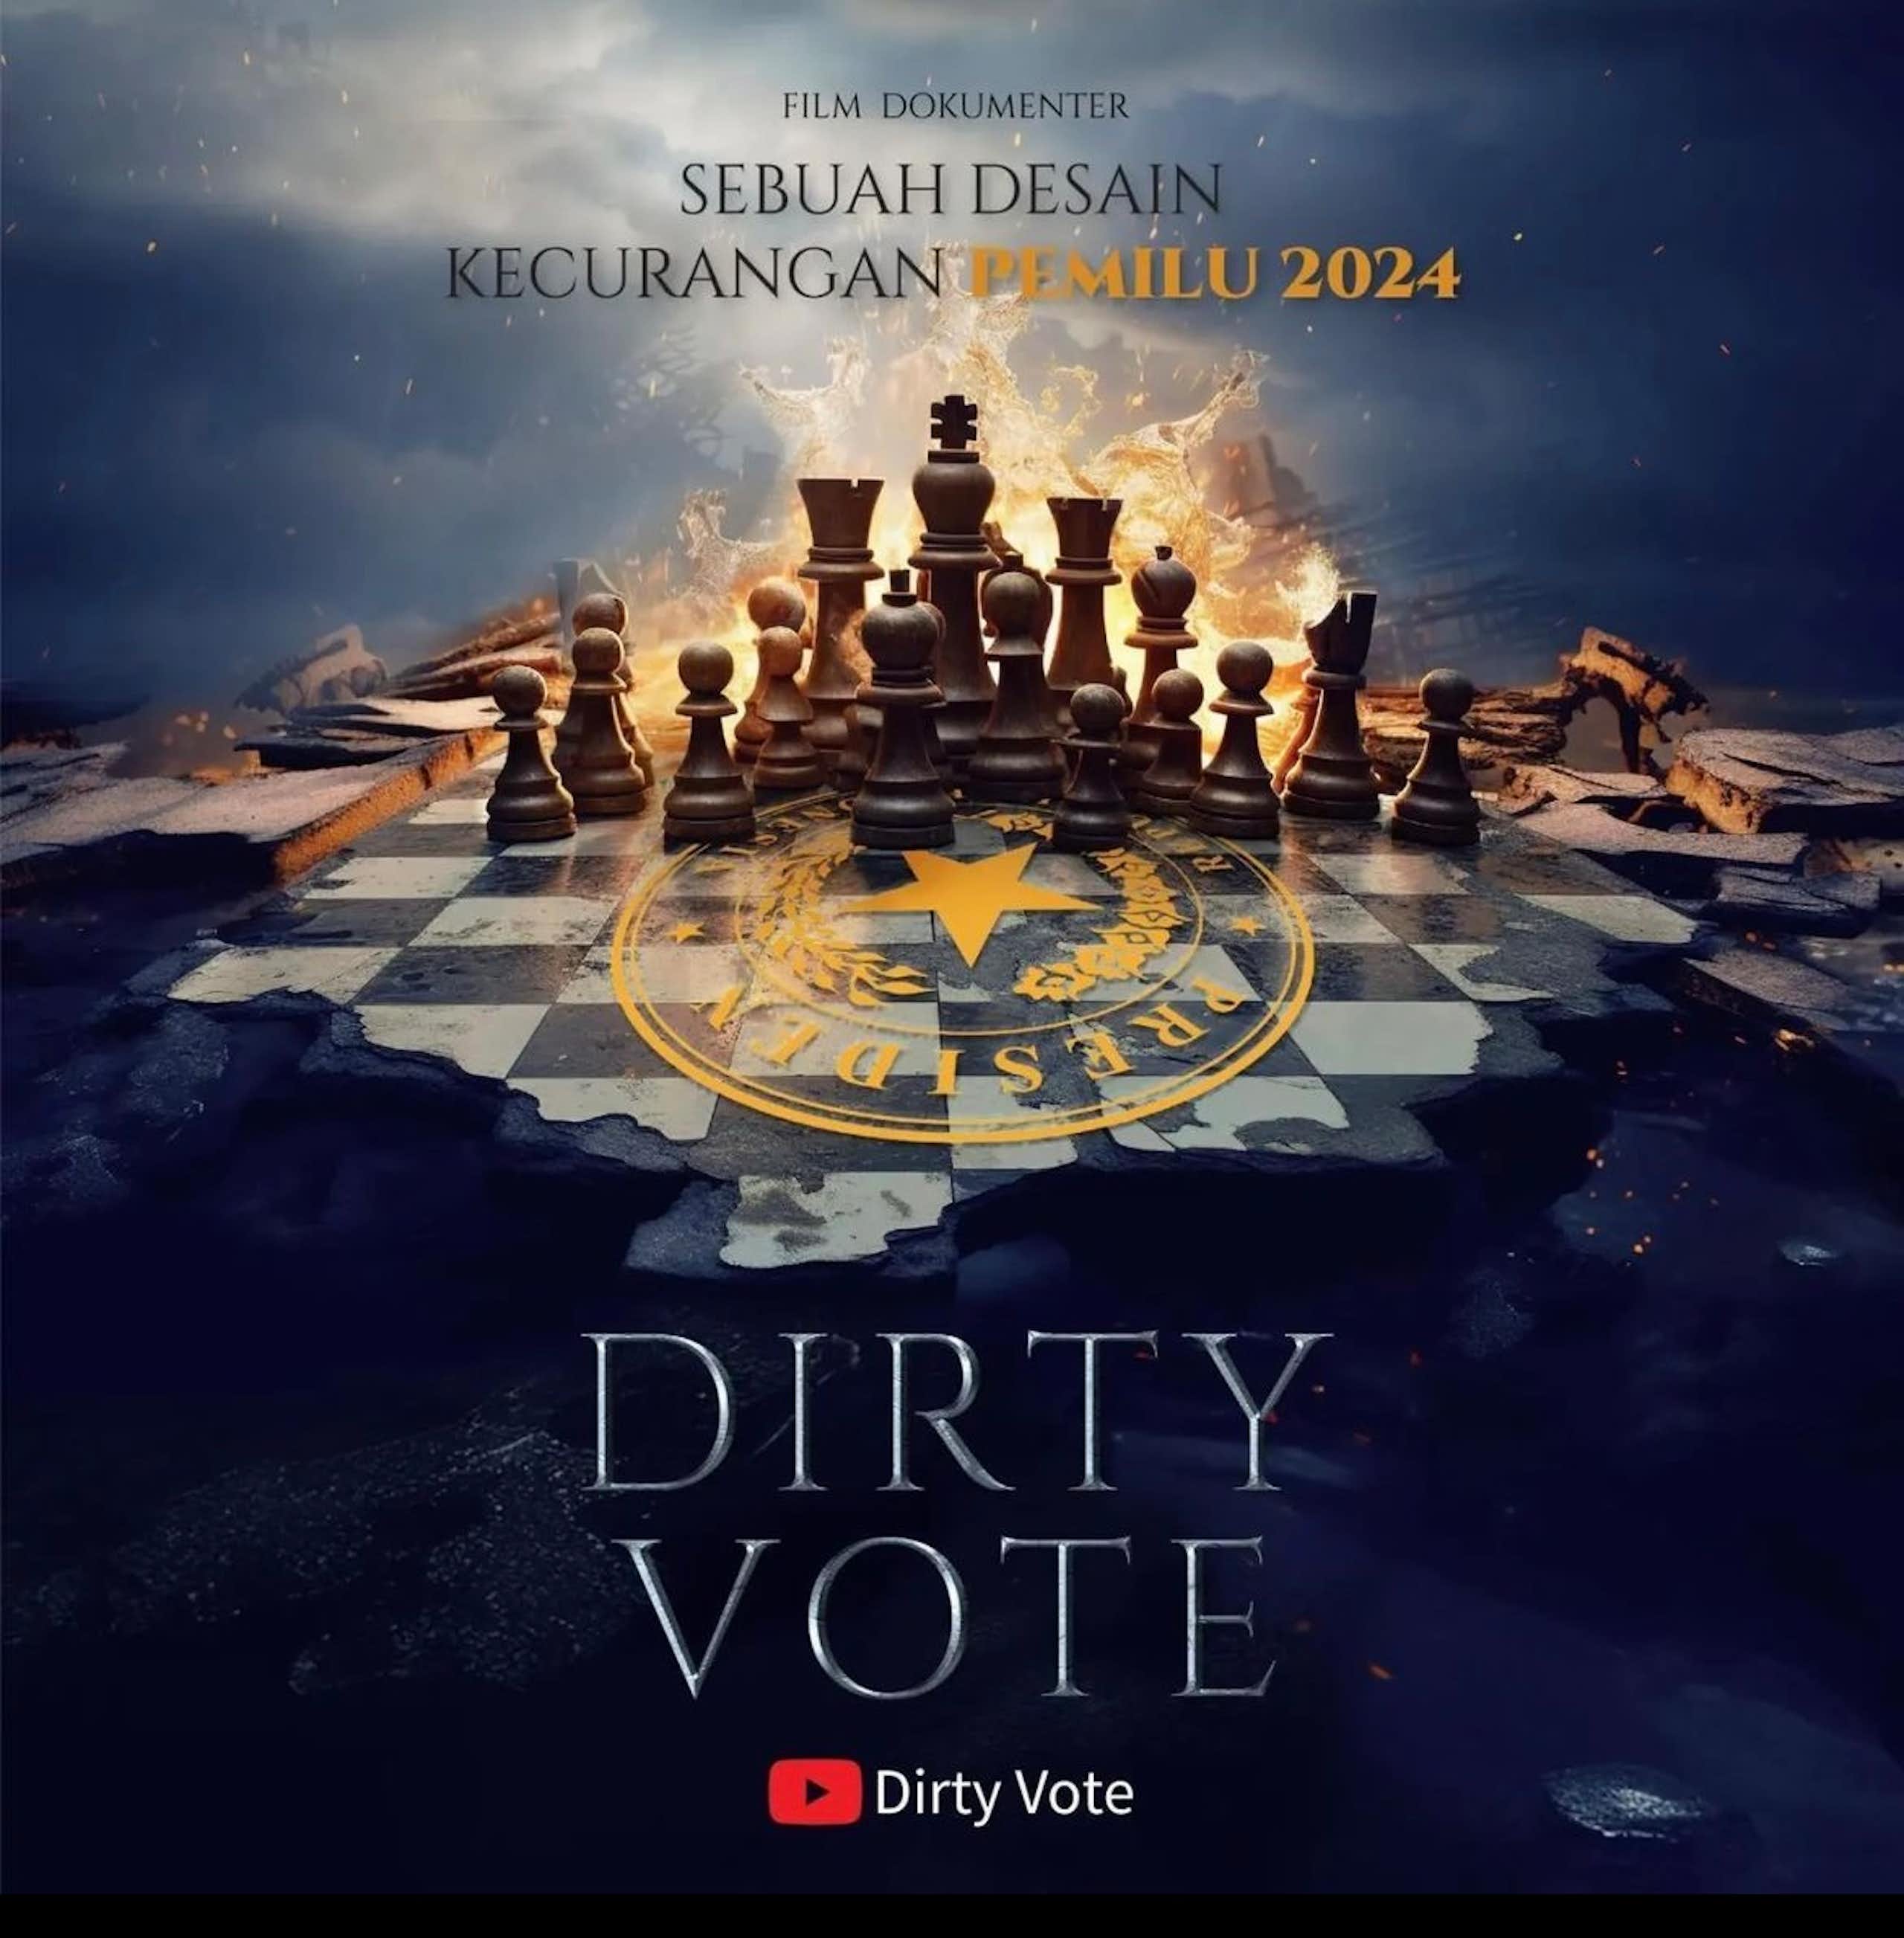 Mengapa masyarakat Indonesia tetap memilih Prabowo meski sudah menonton film dokumenter 'Dirty Vote'?